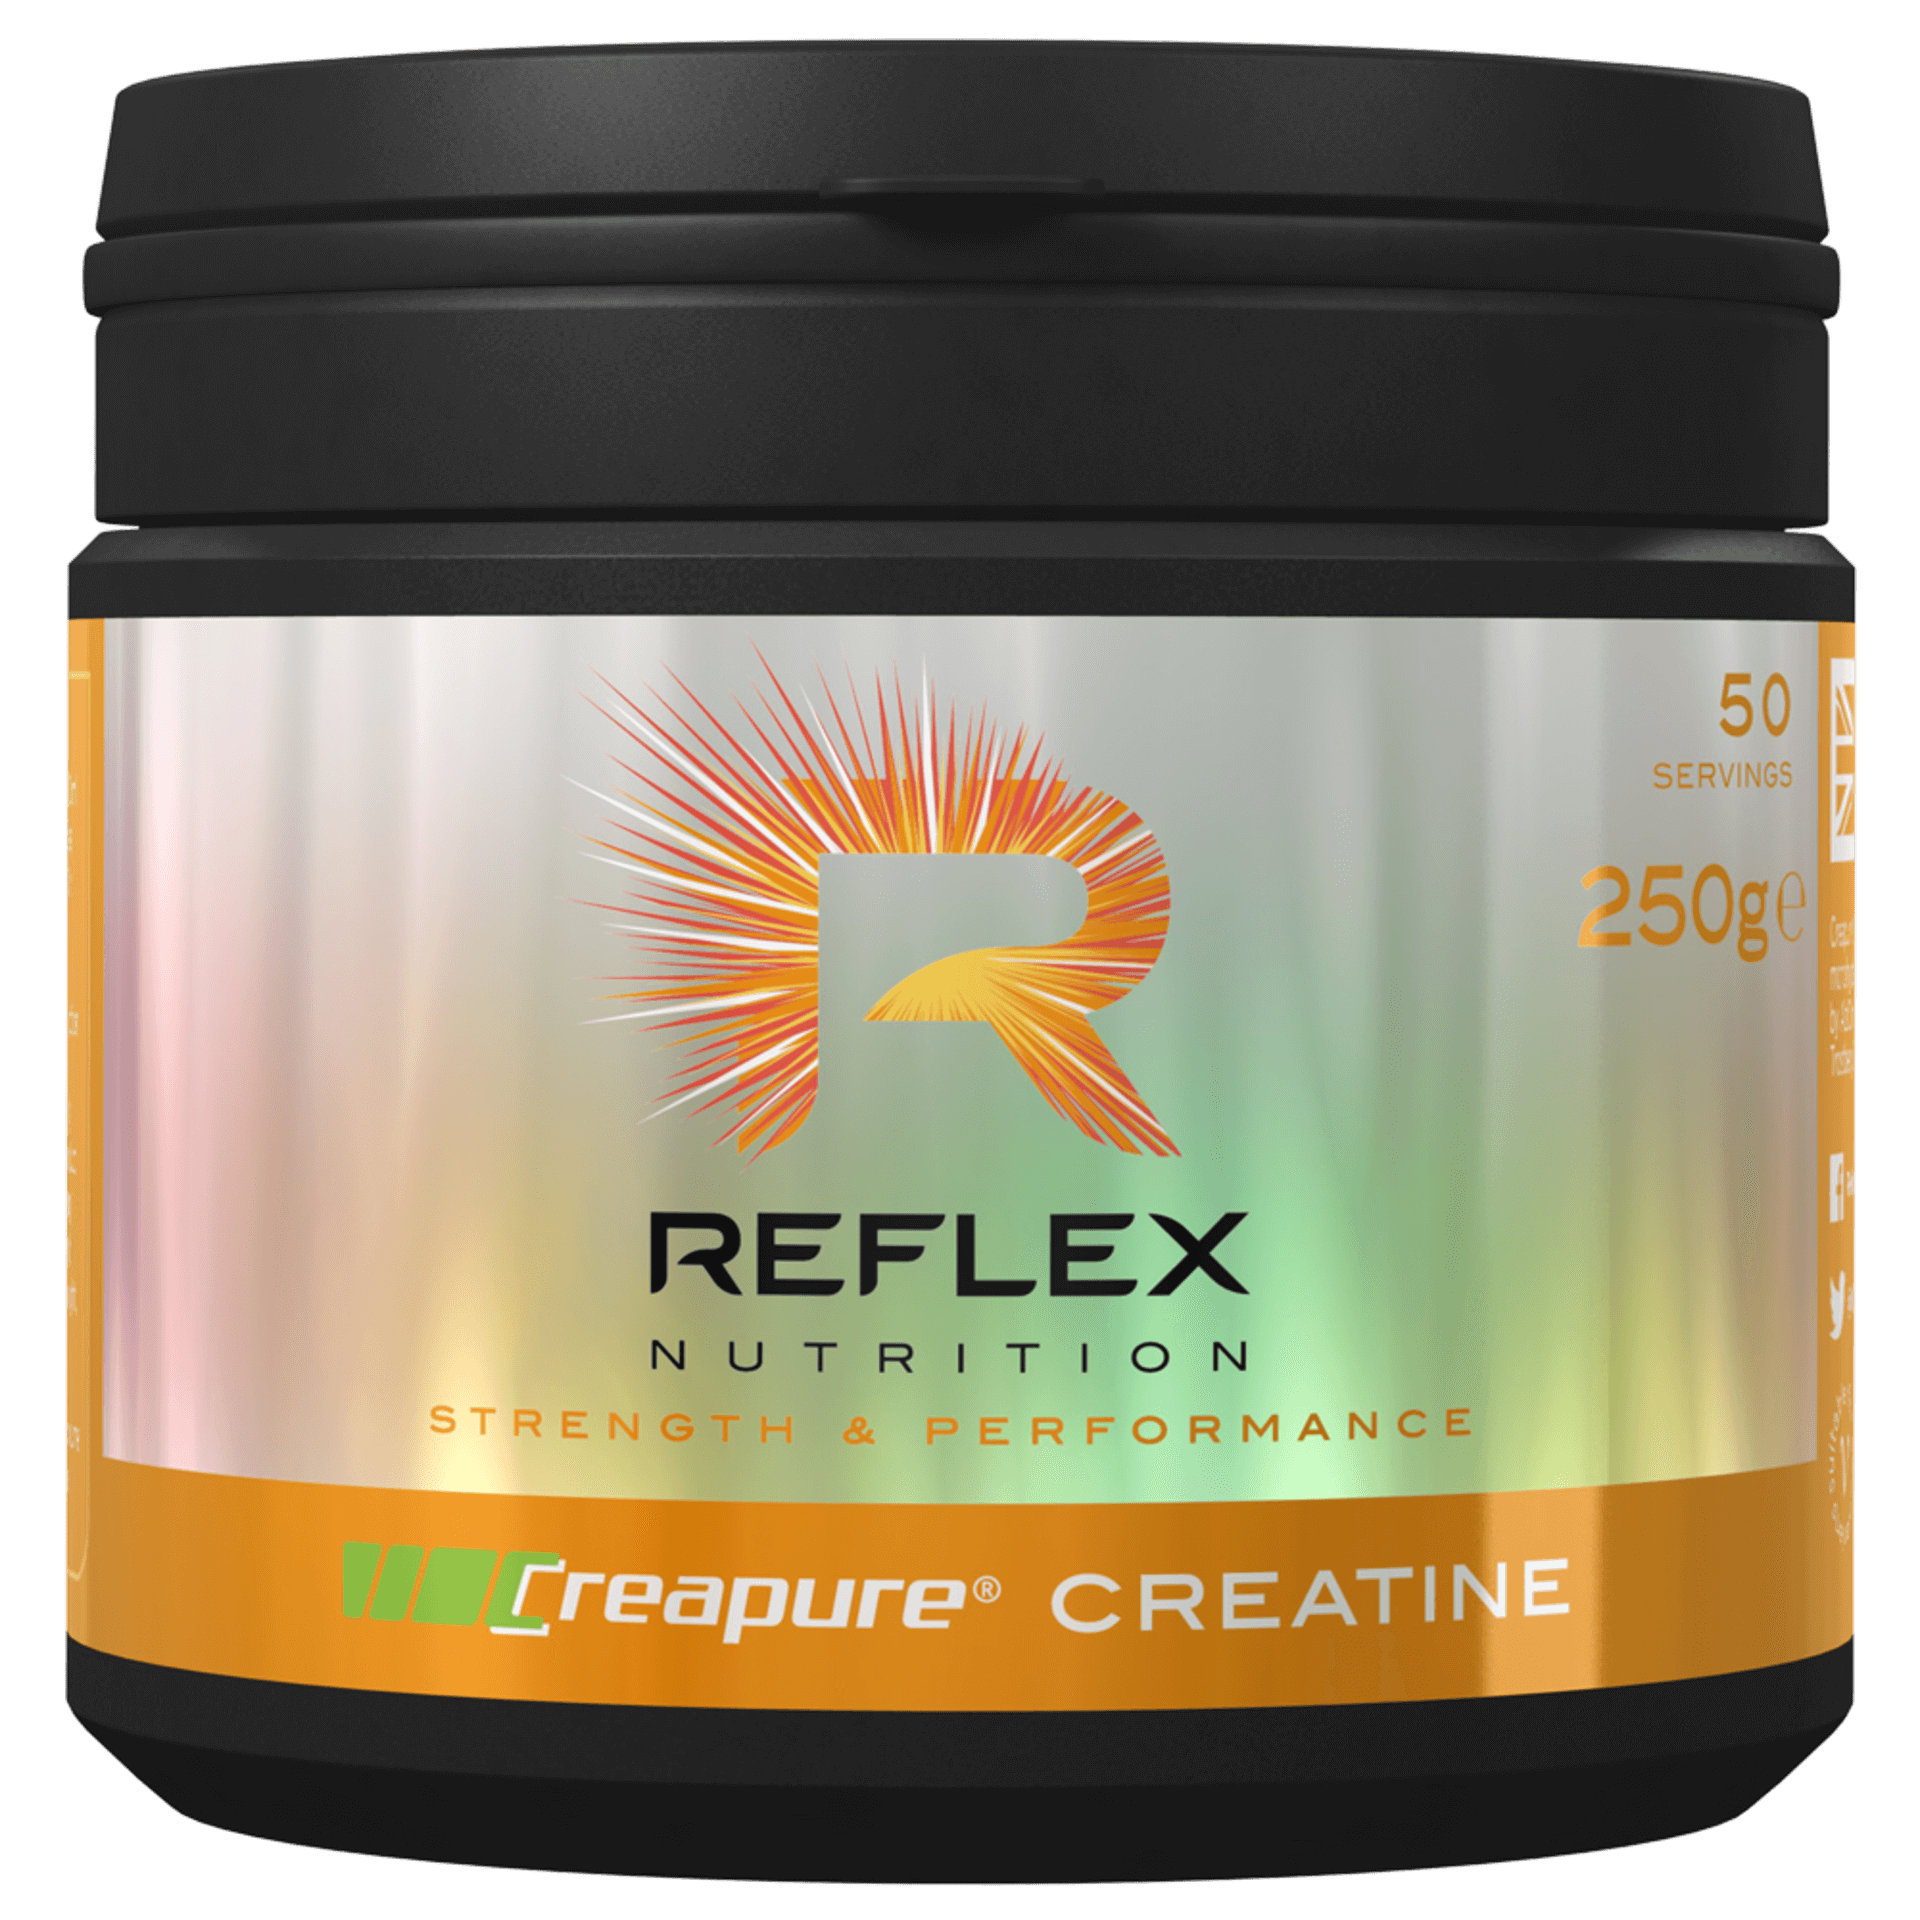 Reflex Nutrition creapure Creatine 250 g Obrázek